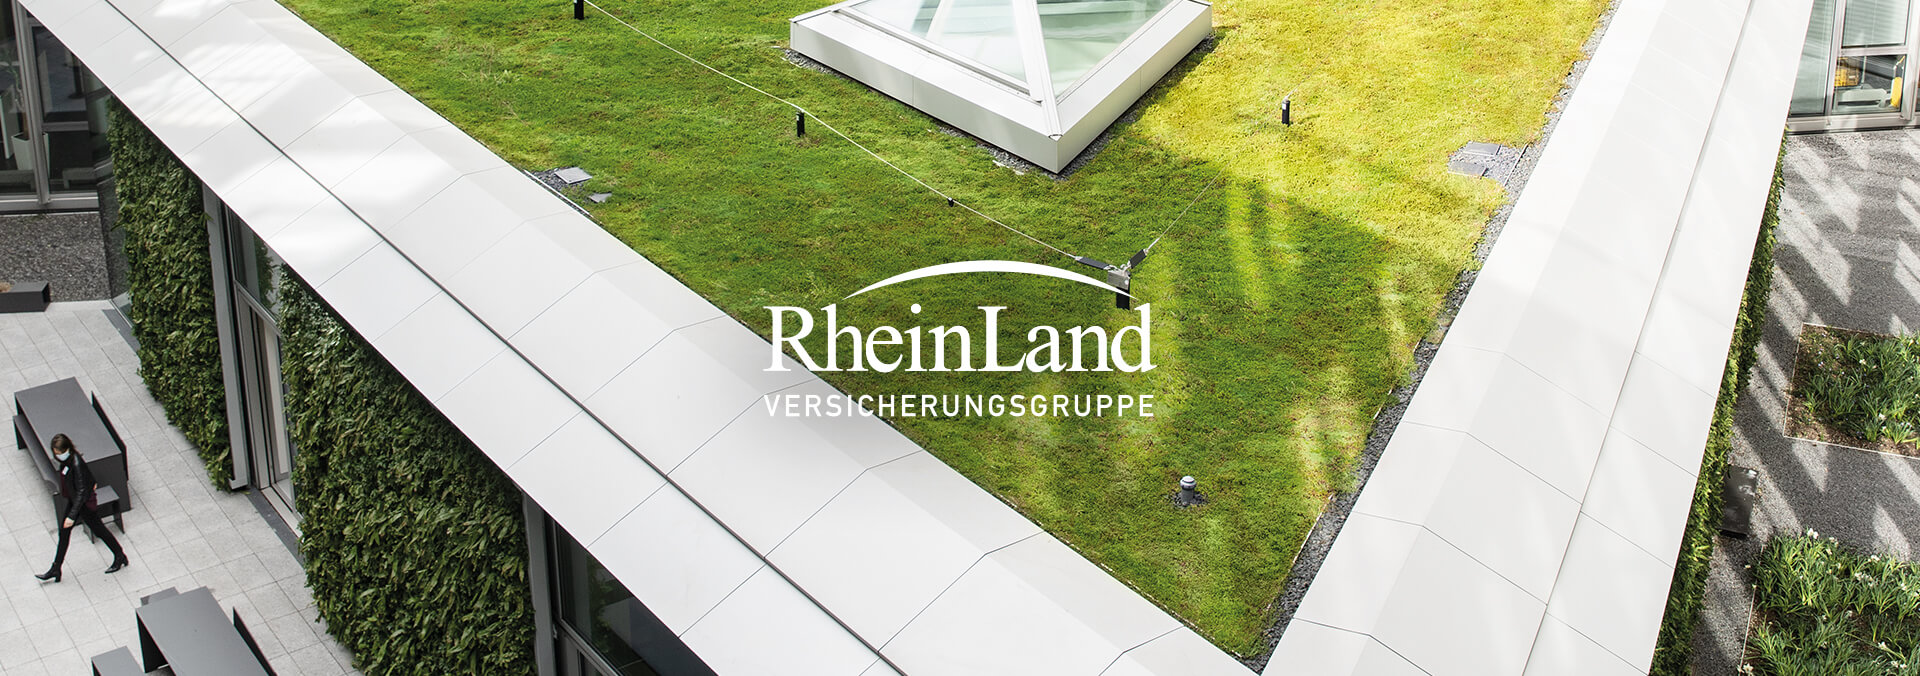 RheinLand Versicherungsgruppe Marketing Kampagne Header